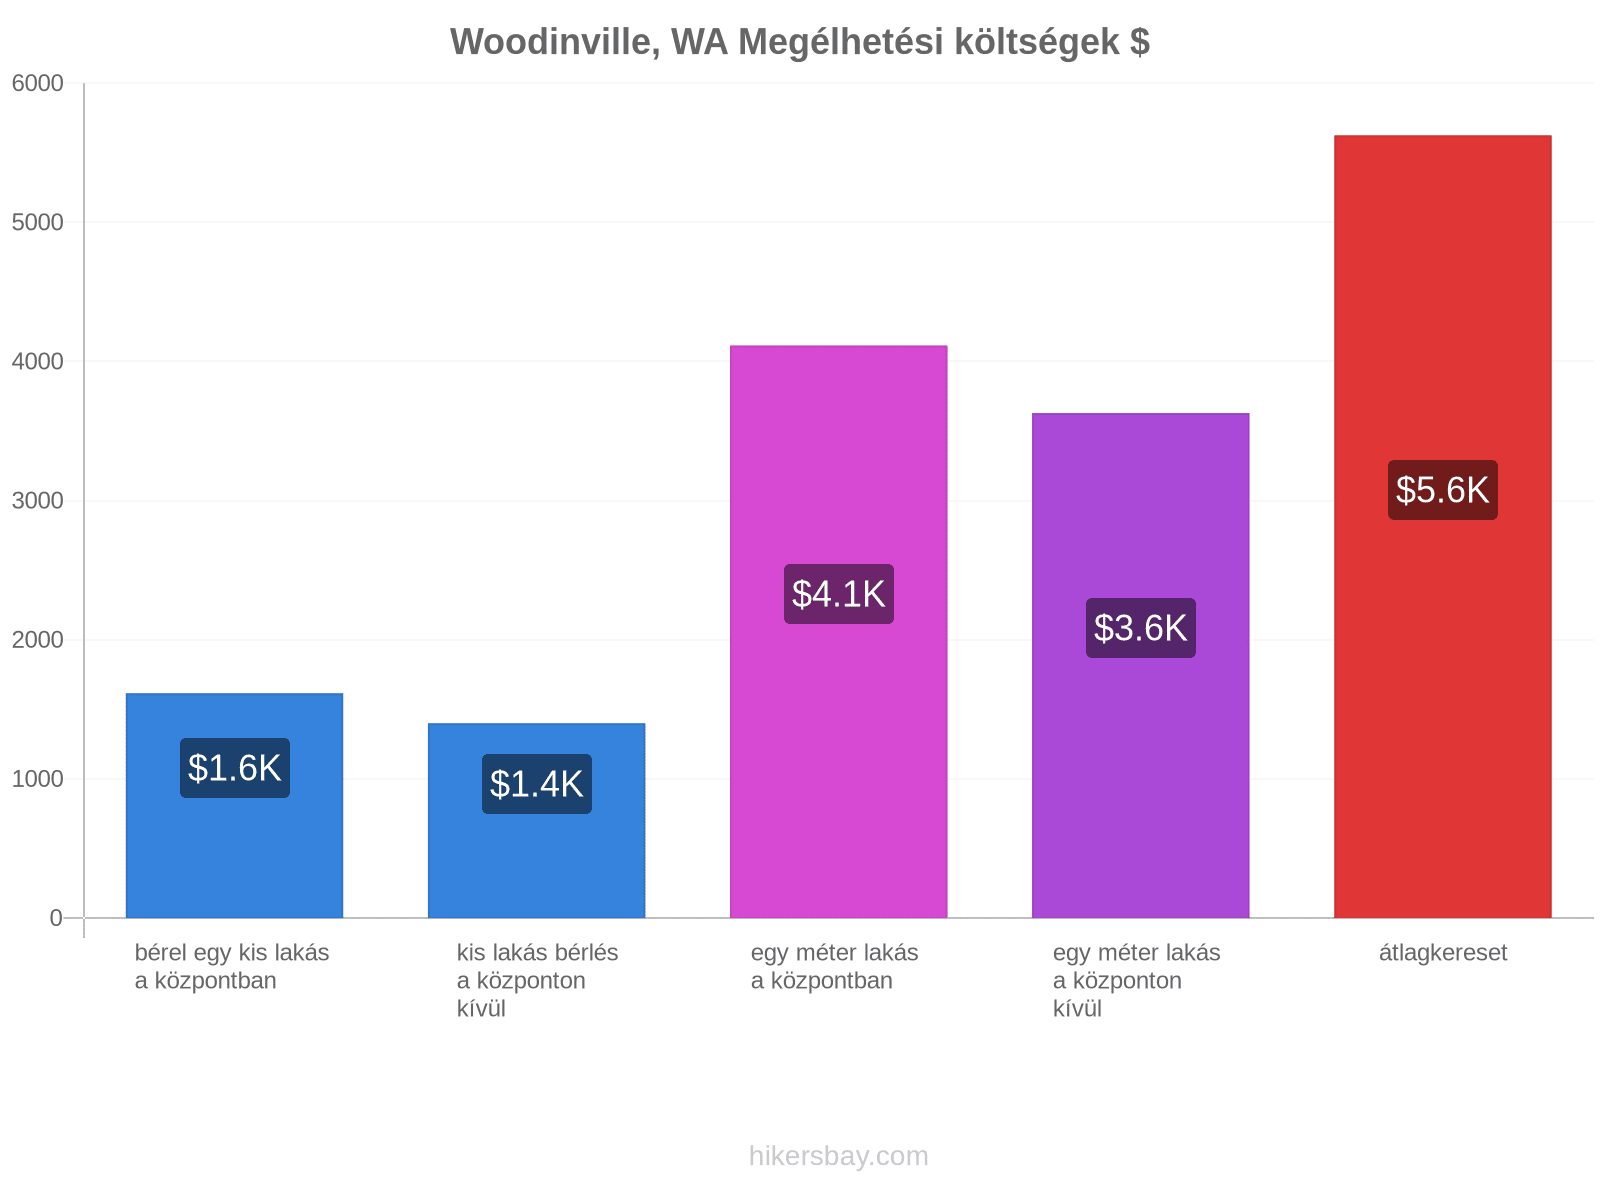 Woodinville, WA megélhetési költségek hikersbay.com